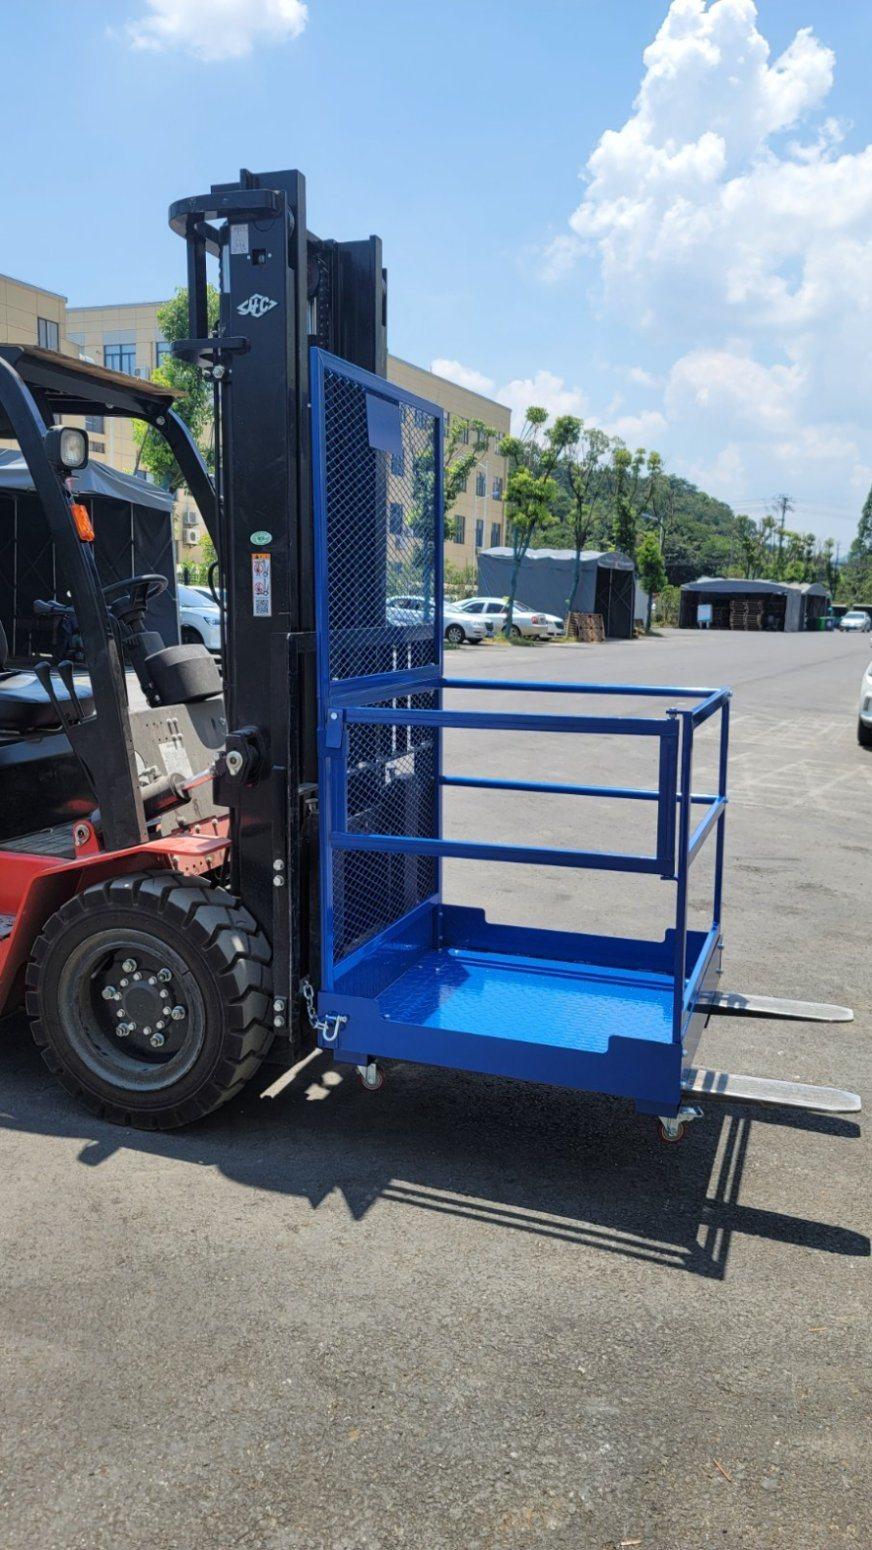 Safety Platform / Work Basket for Forklift Trucks, Loaders, Tractor Working Platform